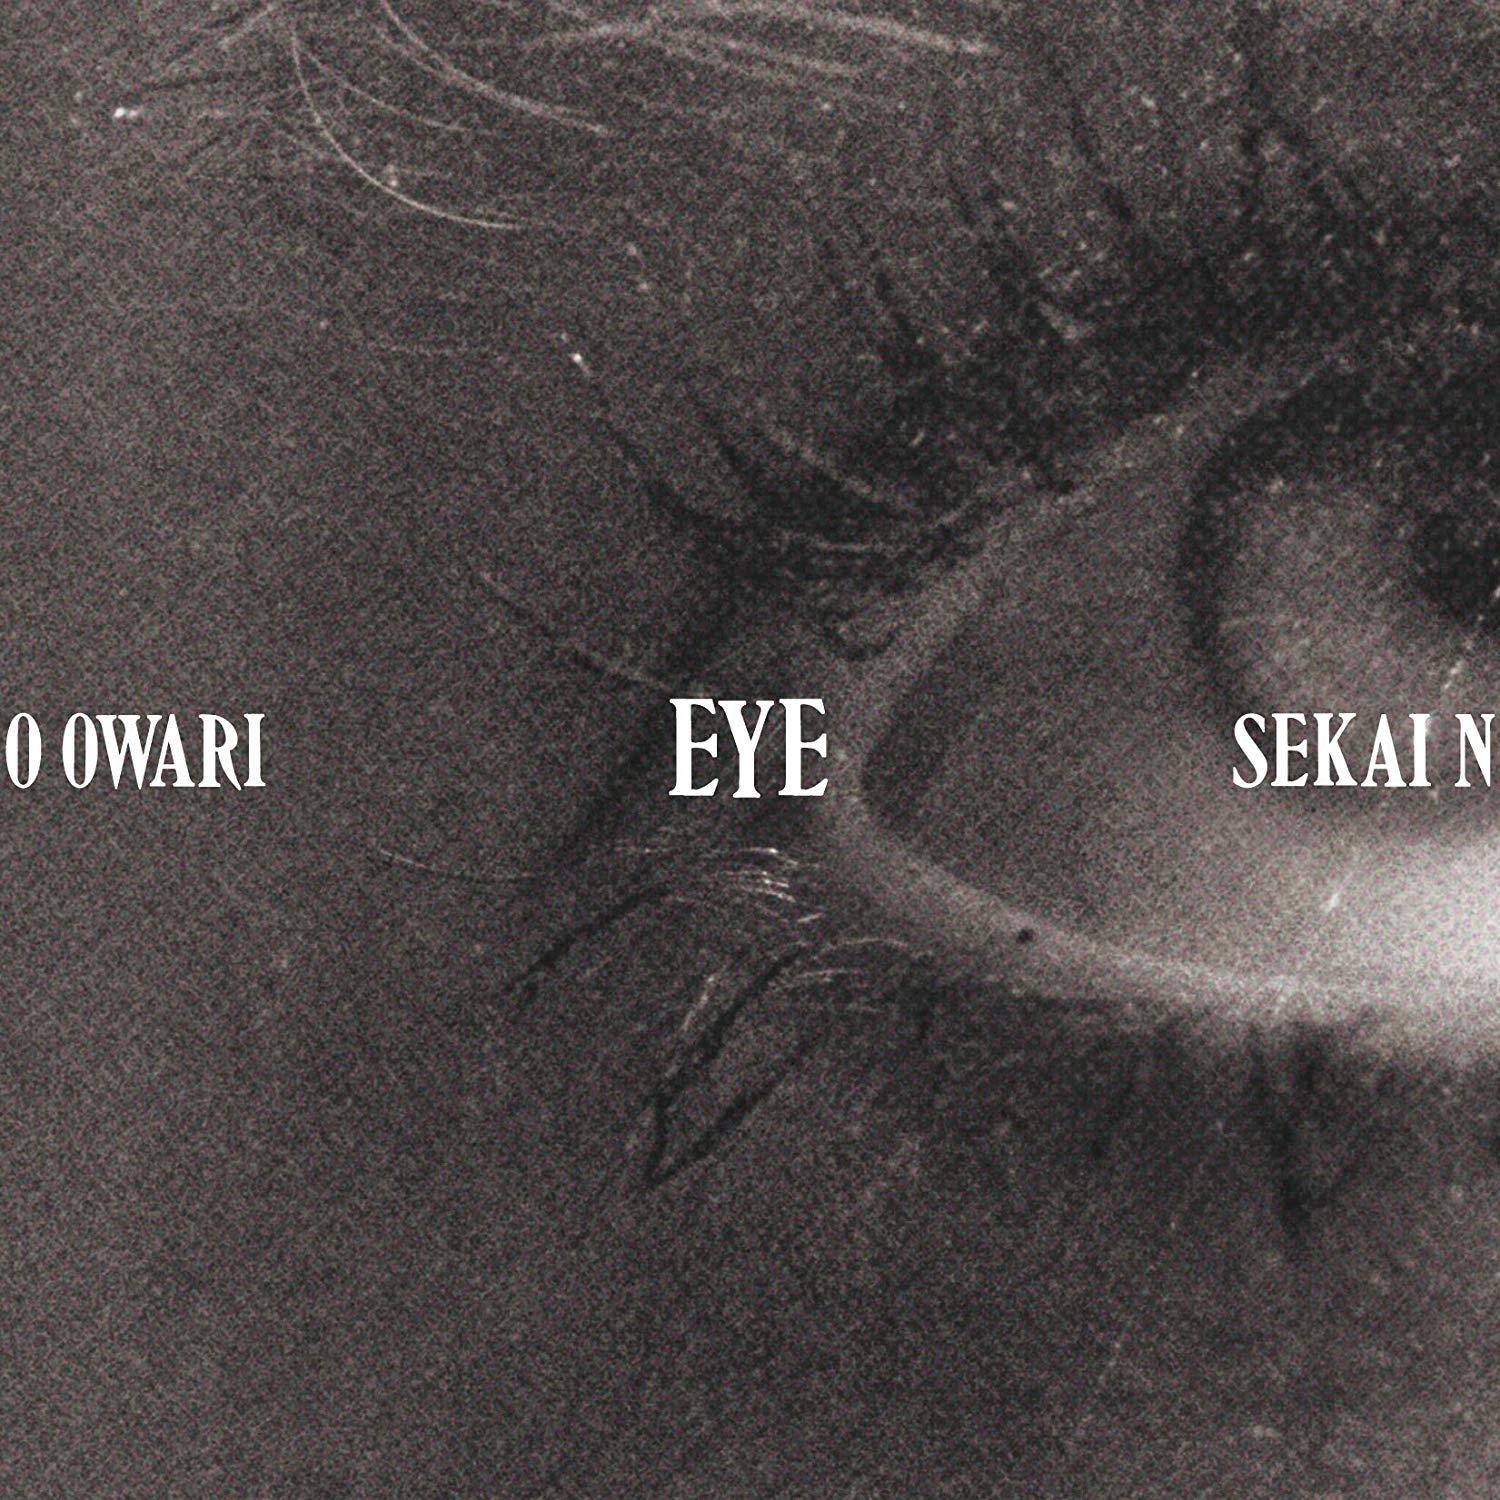 Eye                            (CD)